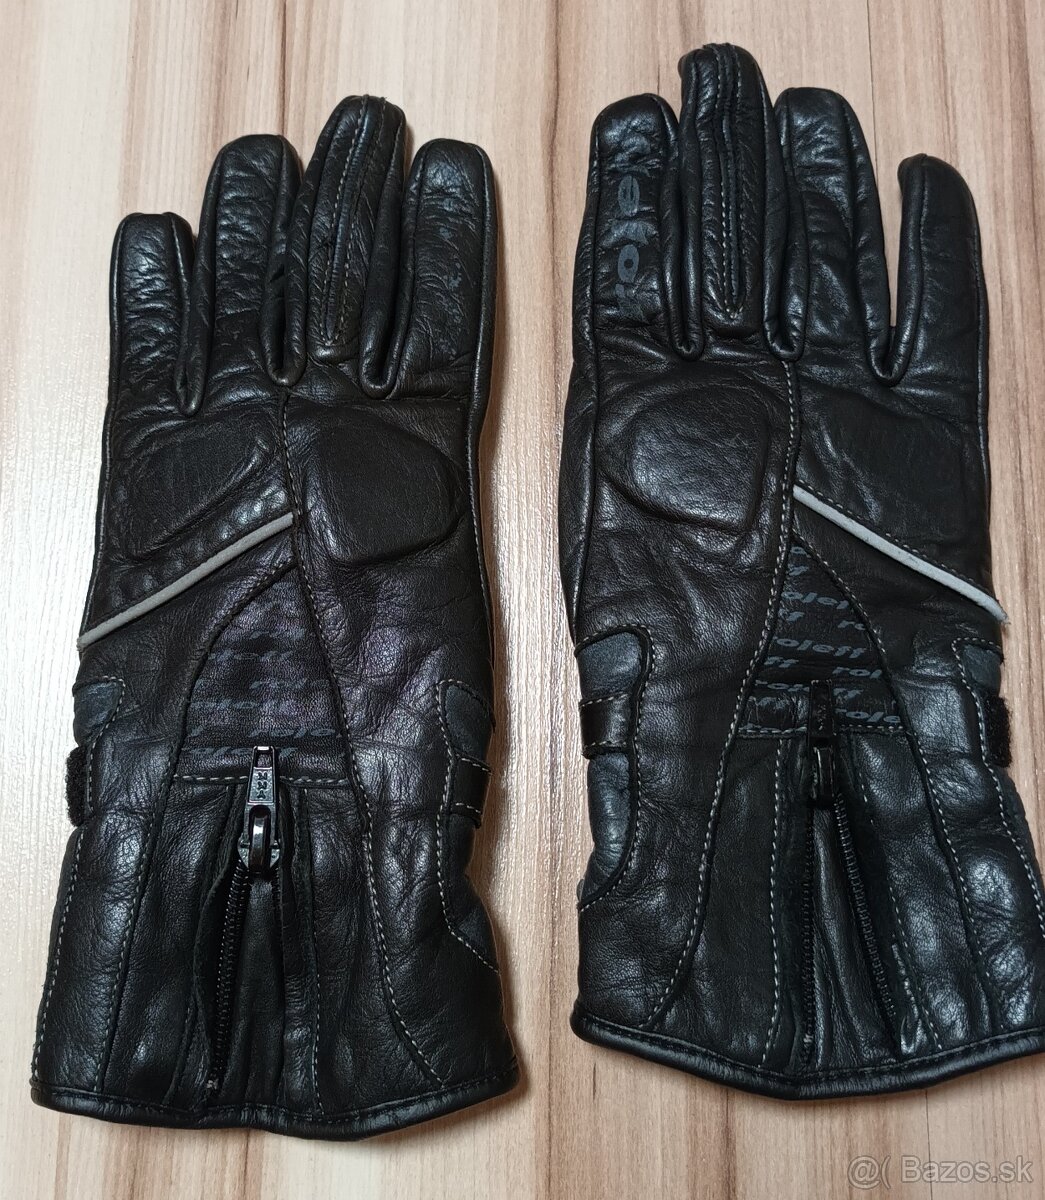 Dámske kožené motocyklové rukavice